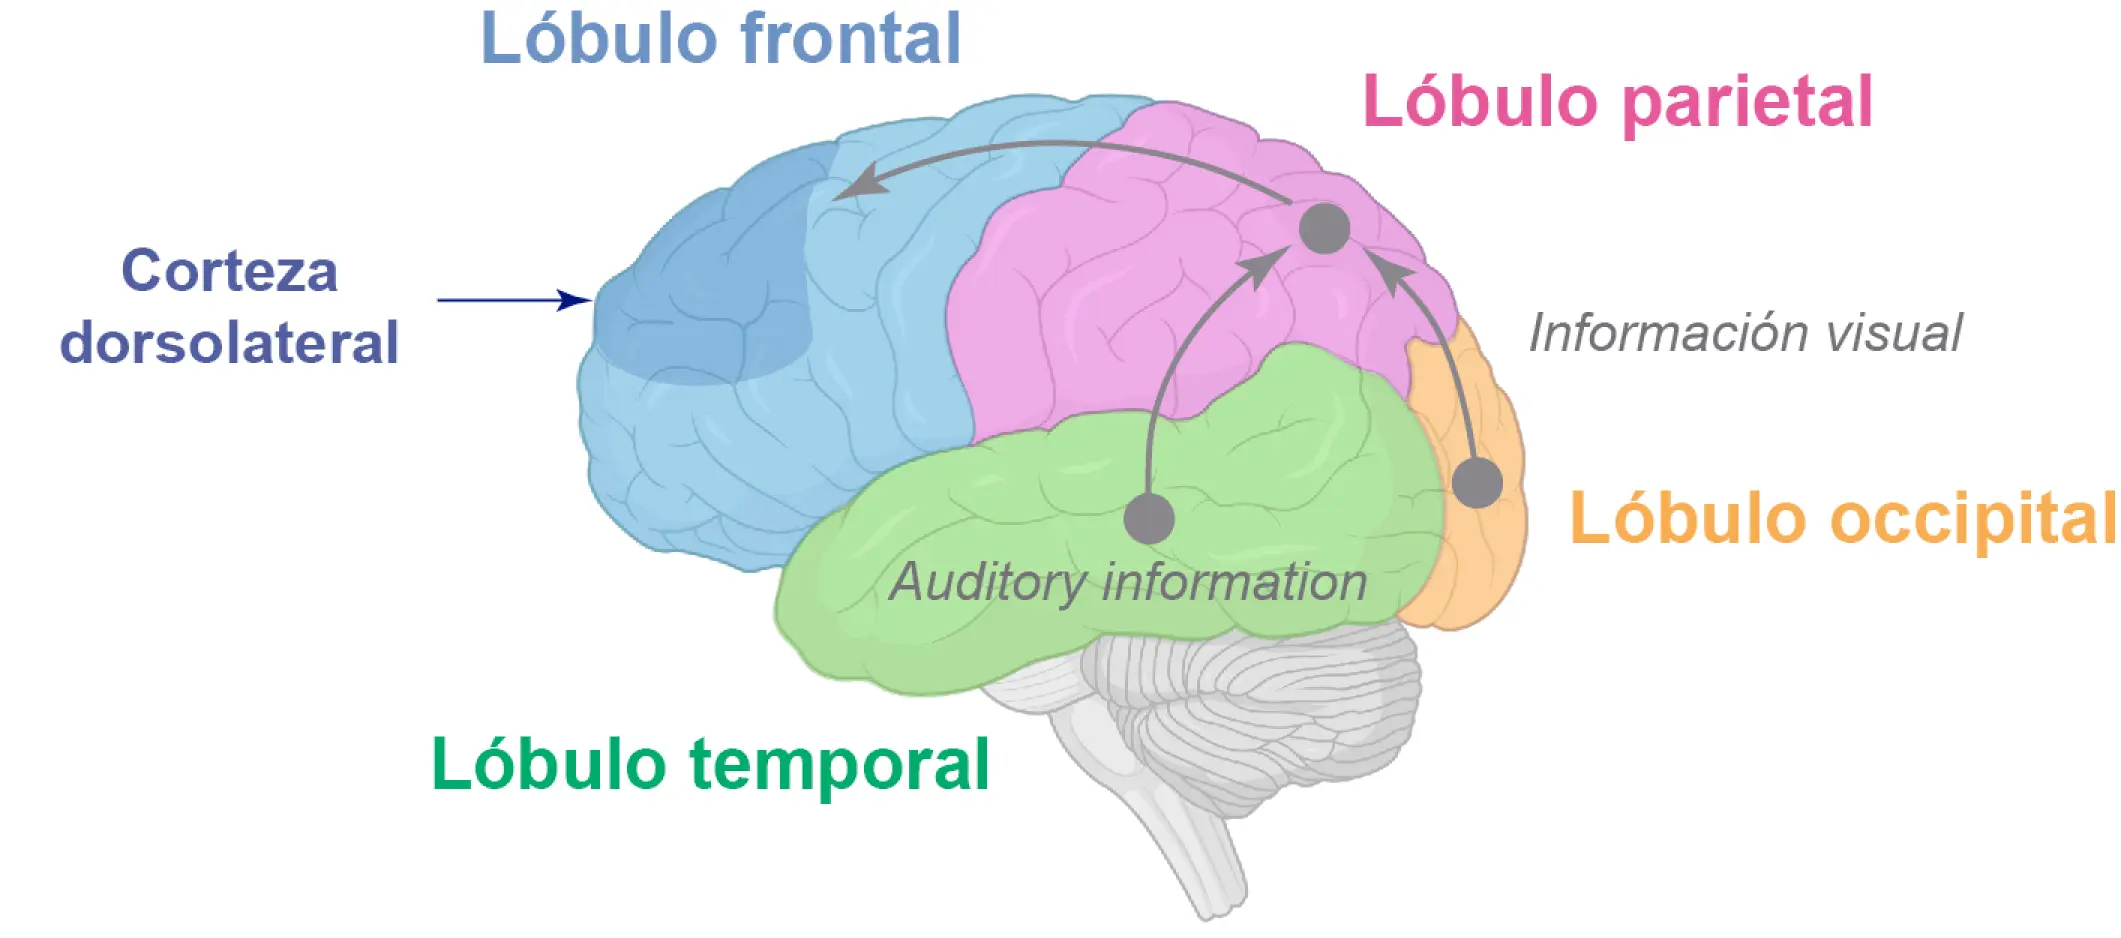 areas de inteligencia do cerebro - Qué parte del cerebro controla la memoria y la inteligencia